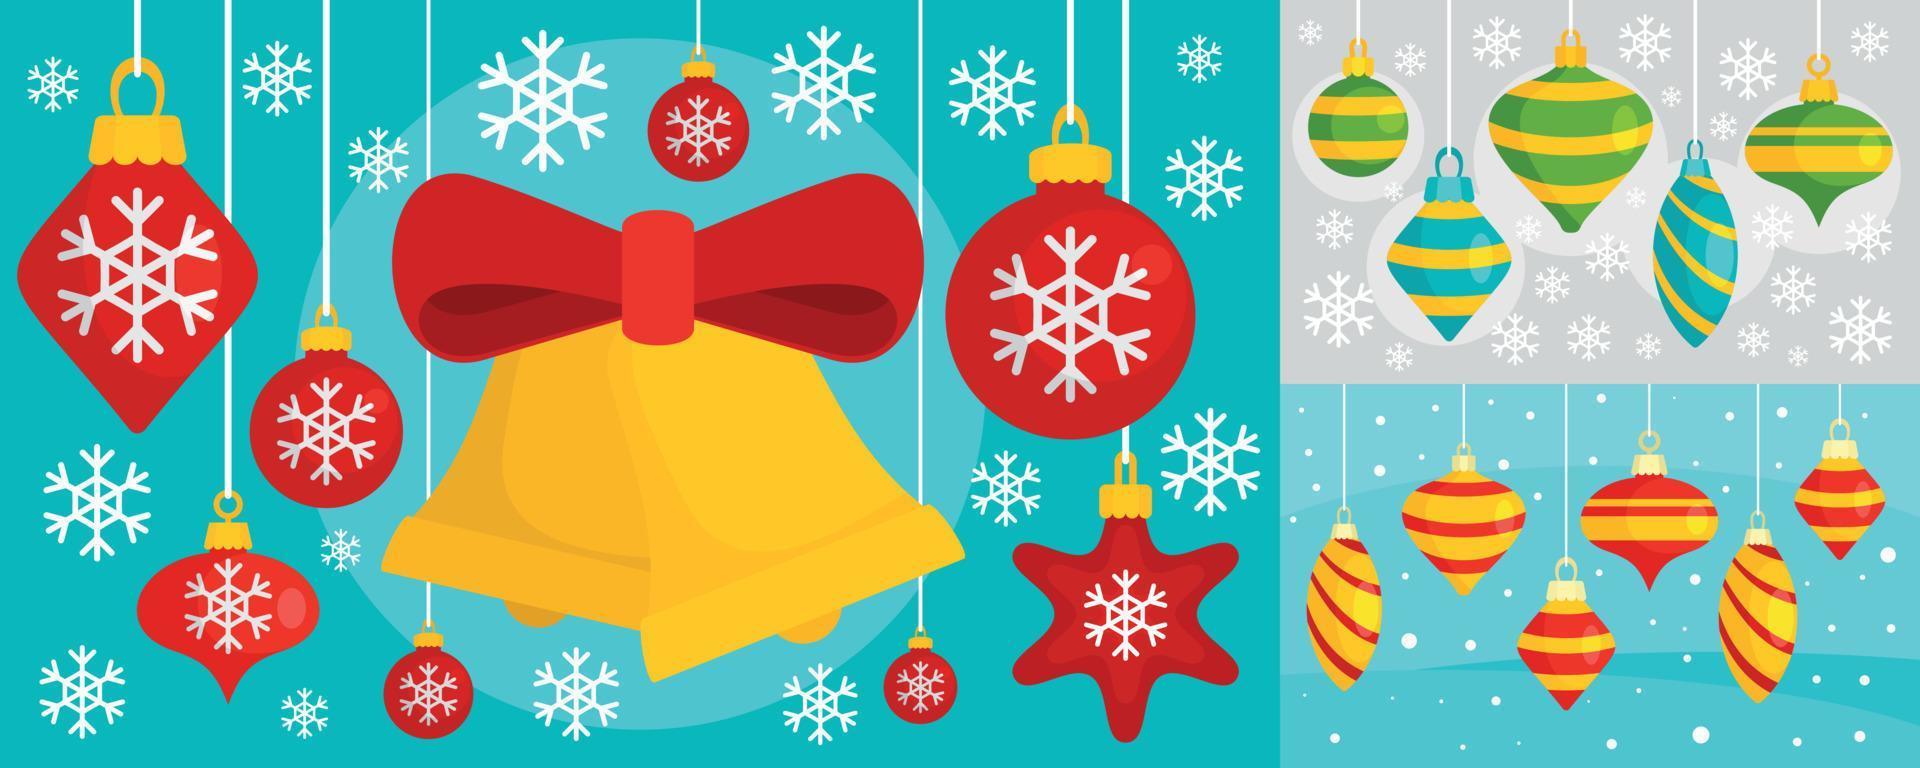 decorar el conjunto de banners de juguetes de árboles de navidad, estilo plano vector